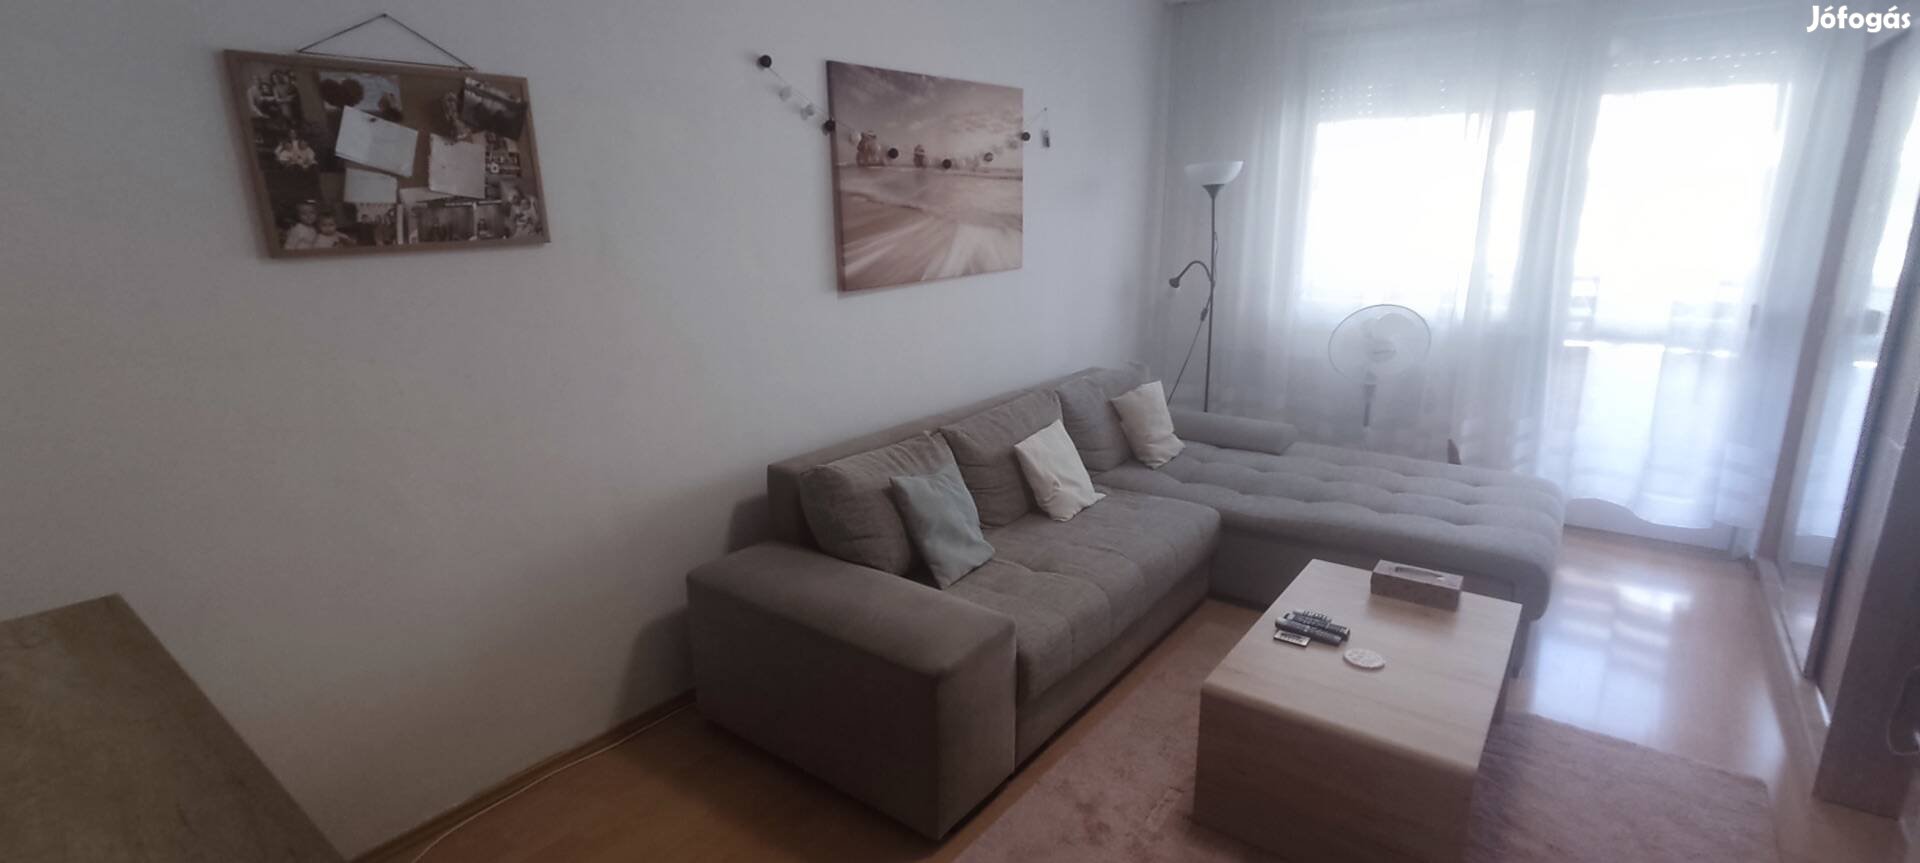 Eladó 31nm-es, 1 szobás panel lakás a Tócóskertben, Debrecenben!